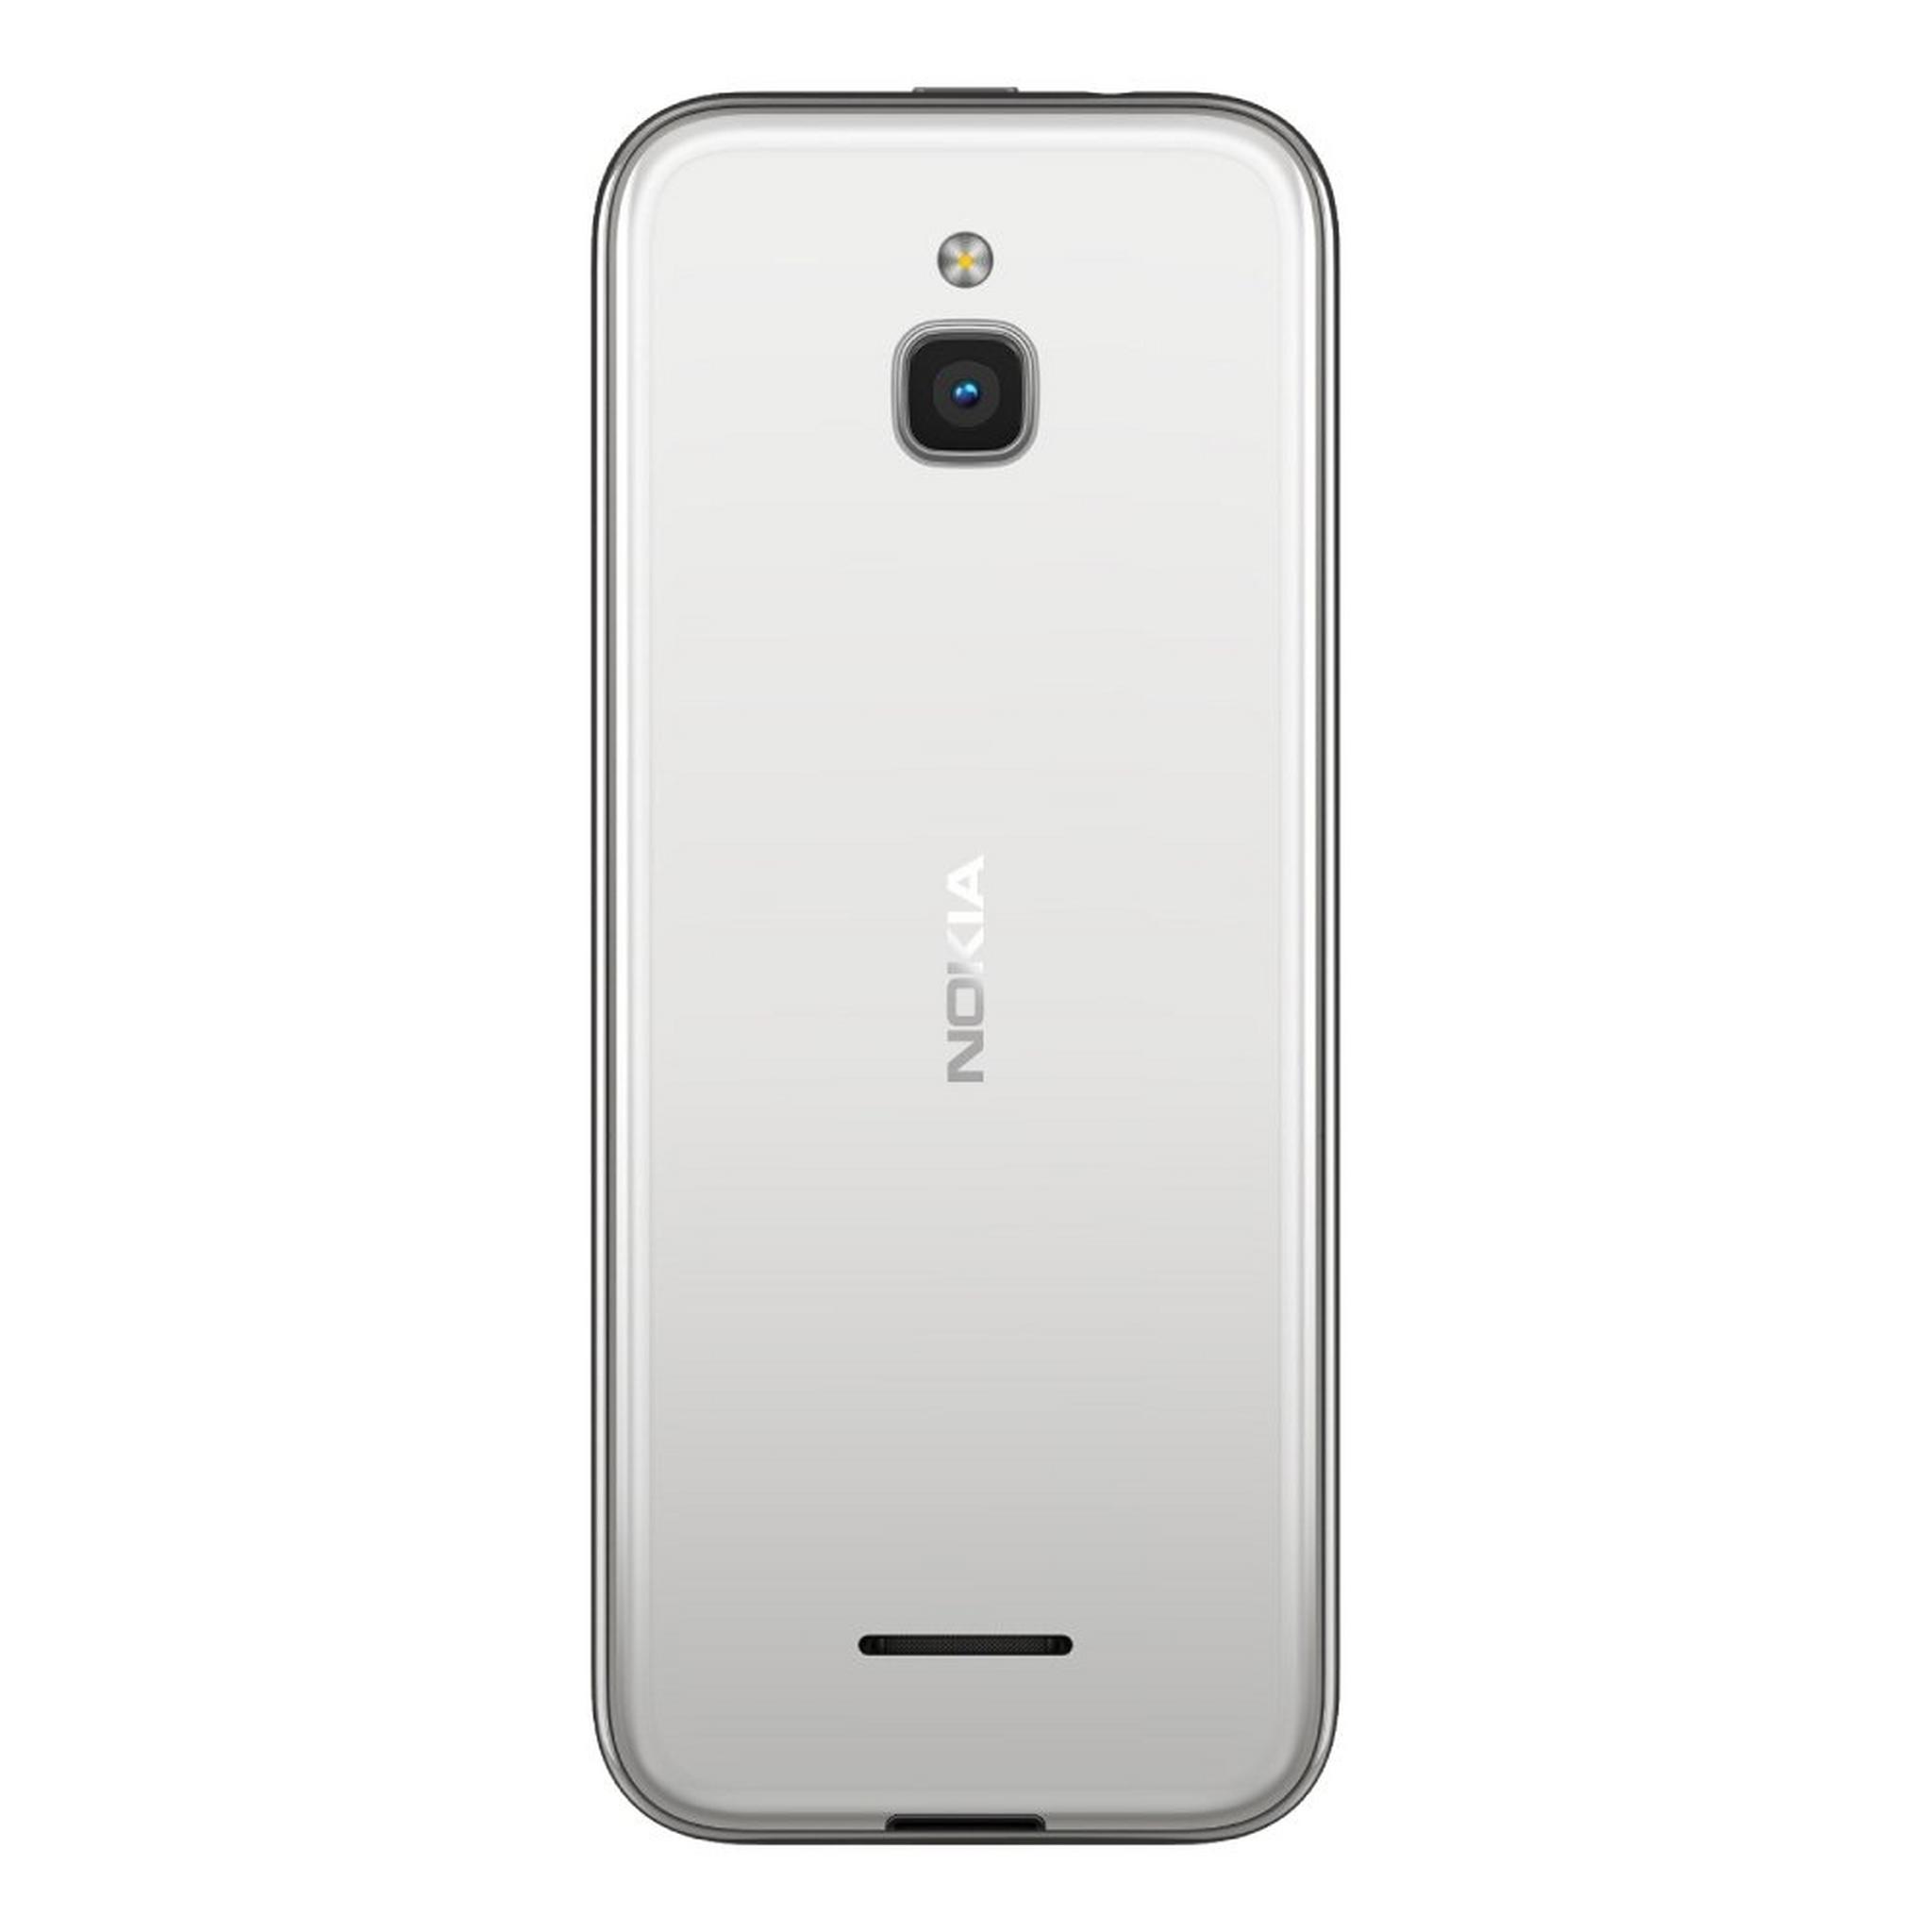 Nokia 8000 4G 2.8" 512MB Phone - White